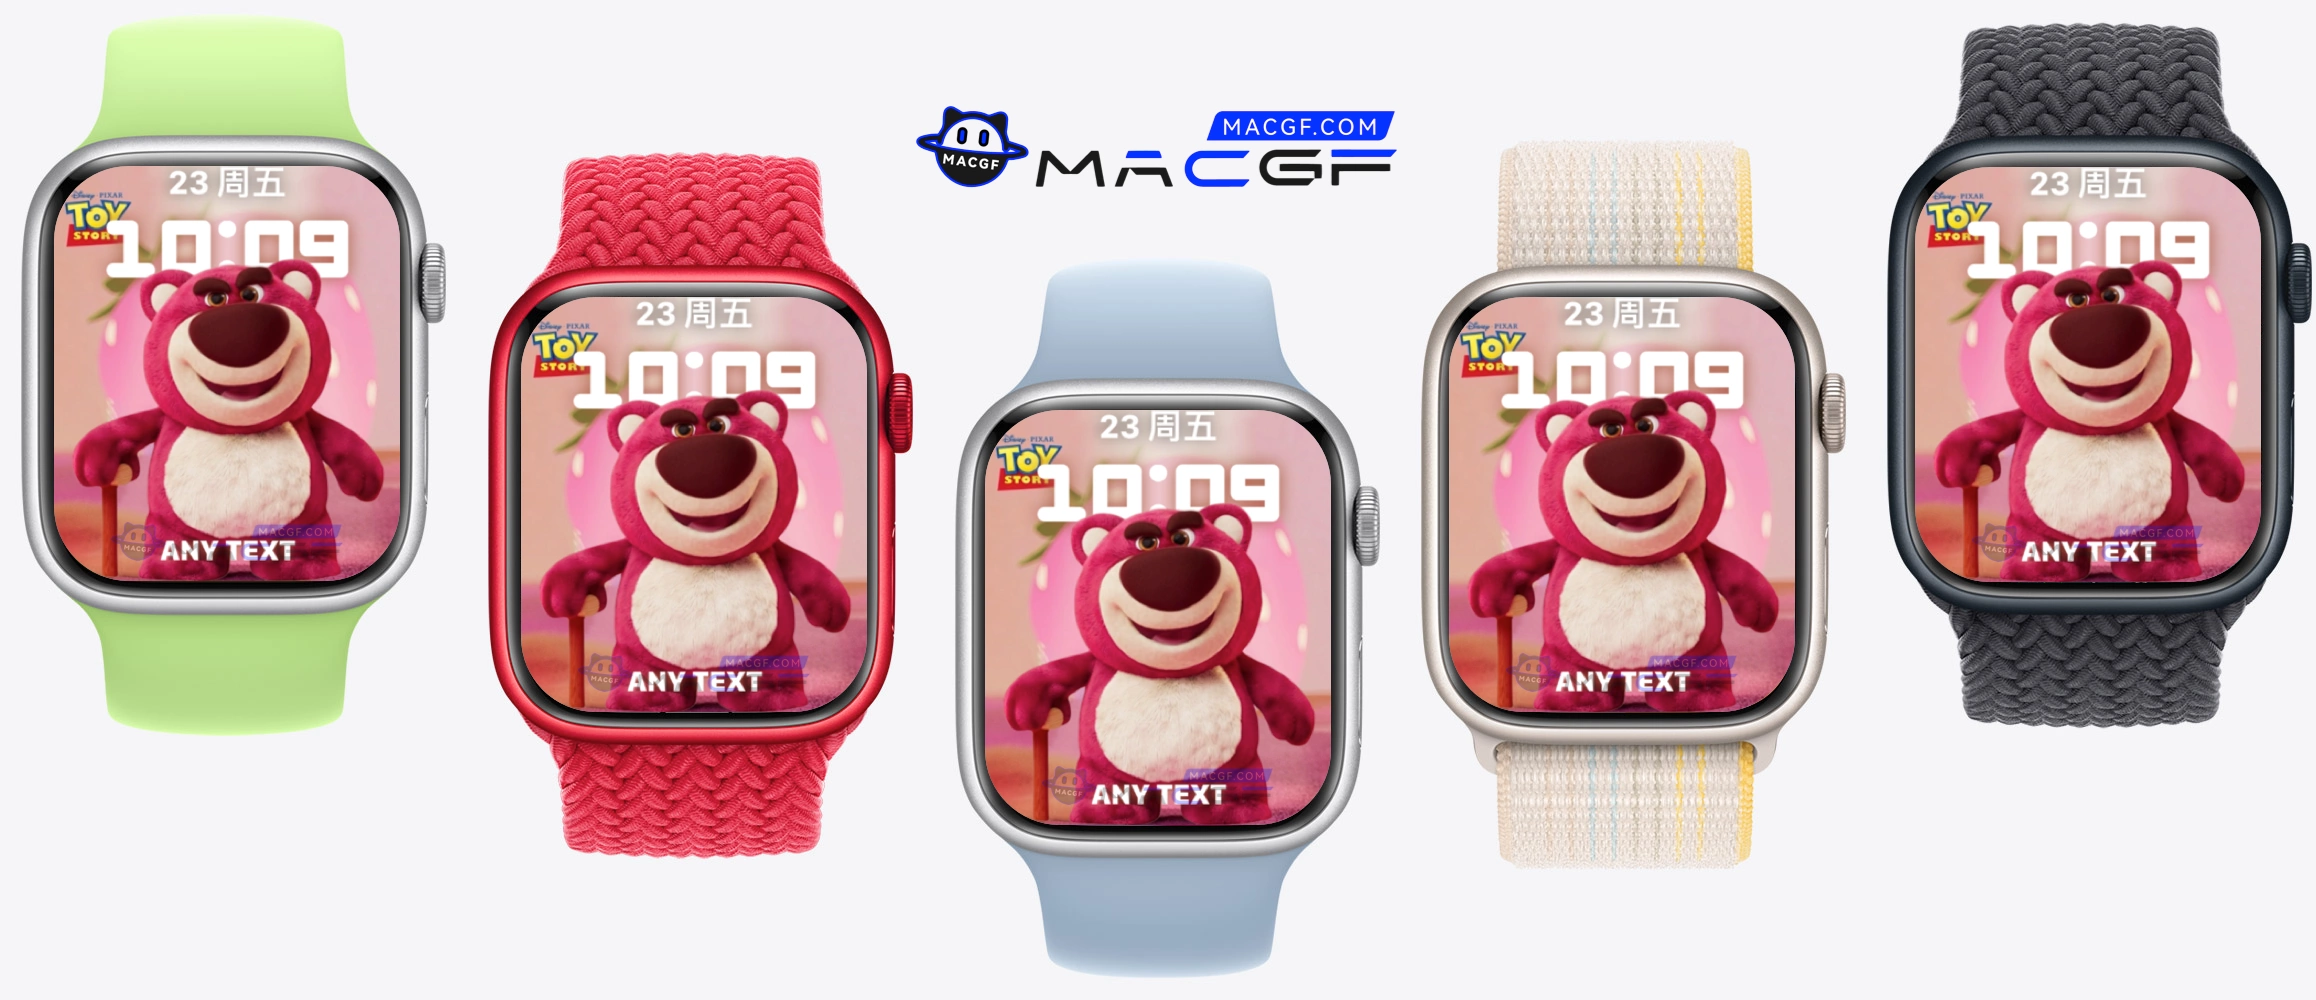 粉粉草莓熊卡通表盘🍓 Apple Watch 可爱人像景深表盘 - macGF